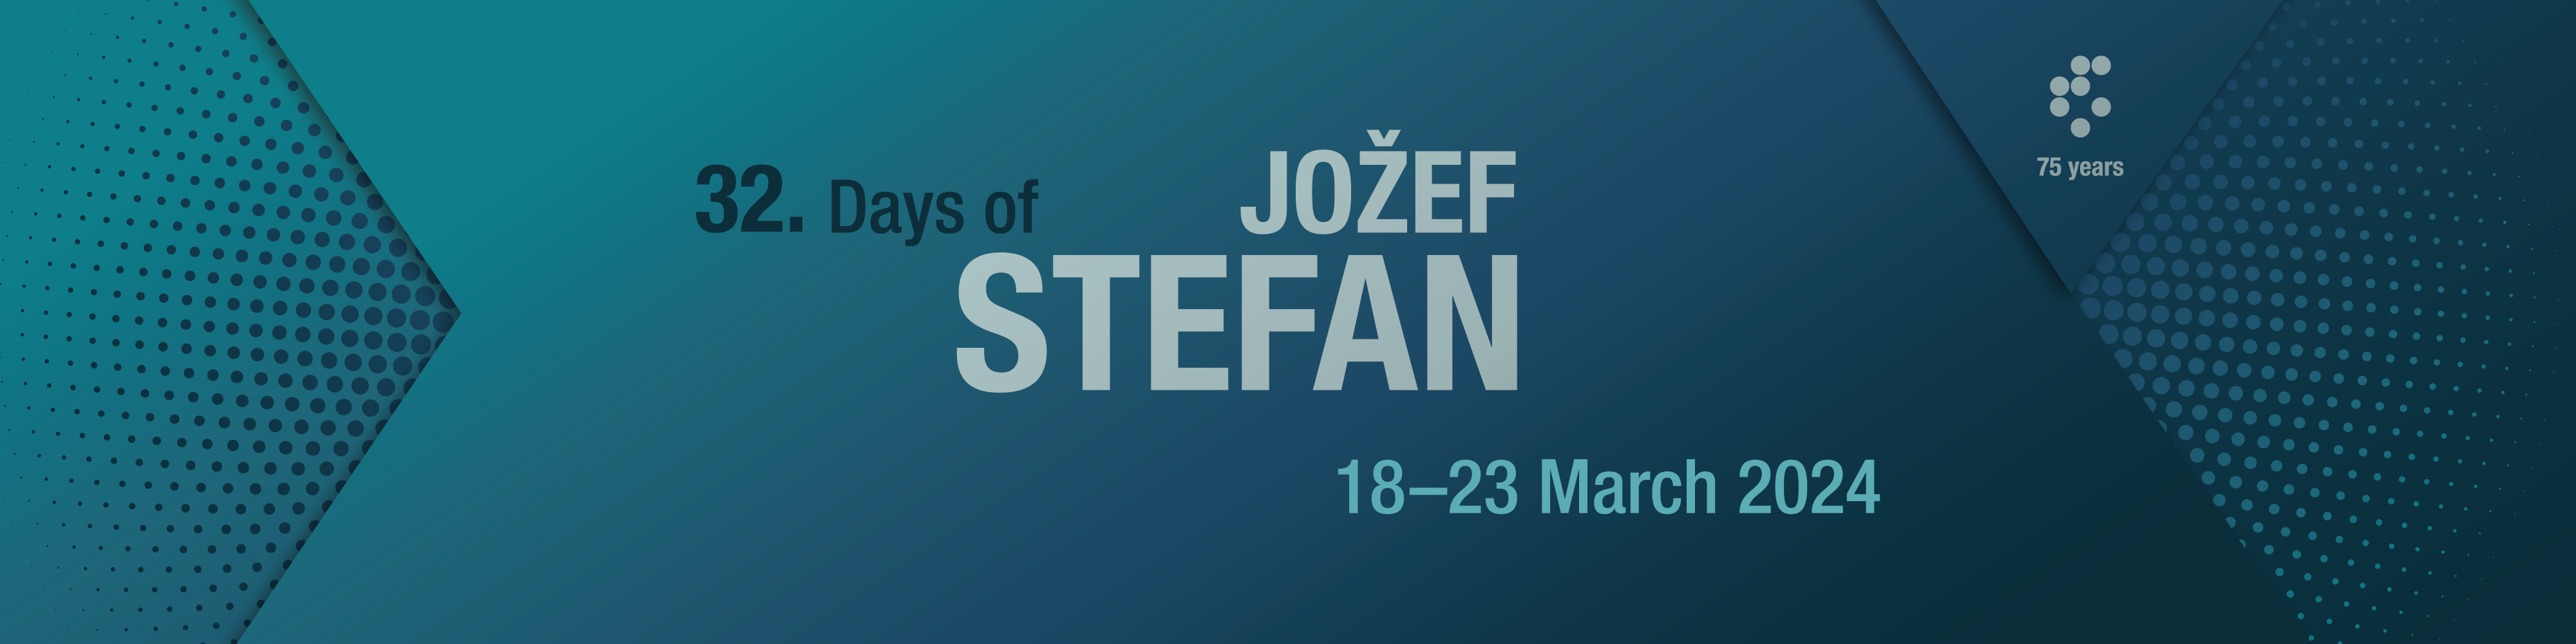 Promotion video of Jožef Stefan days